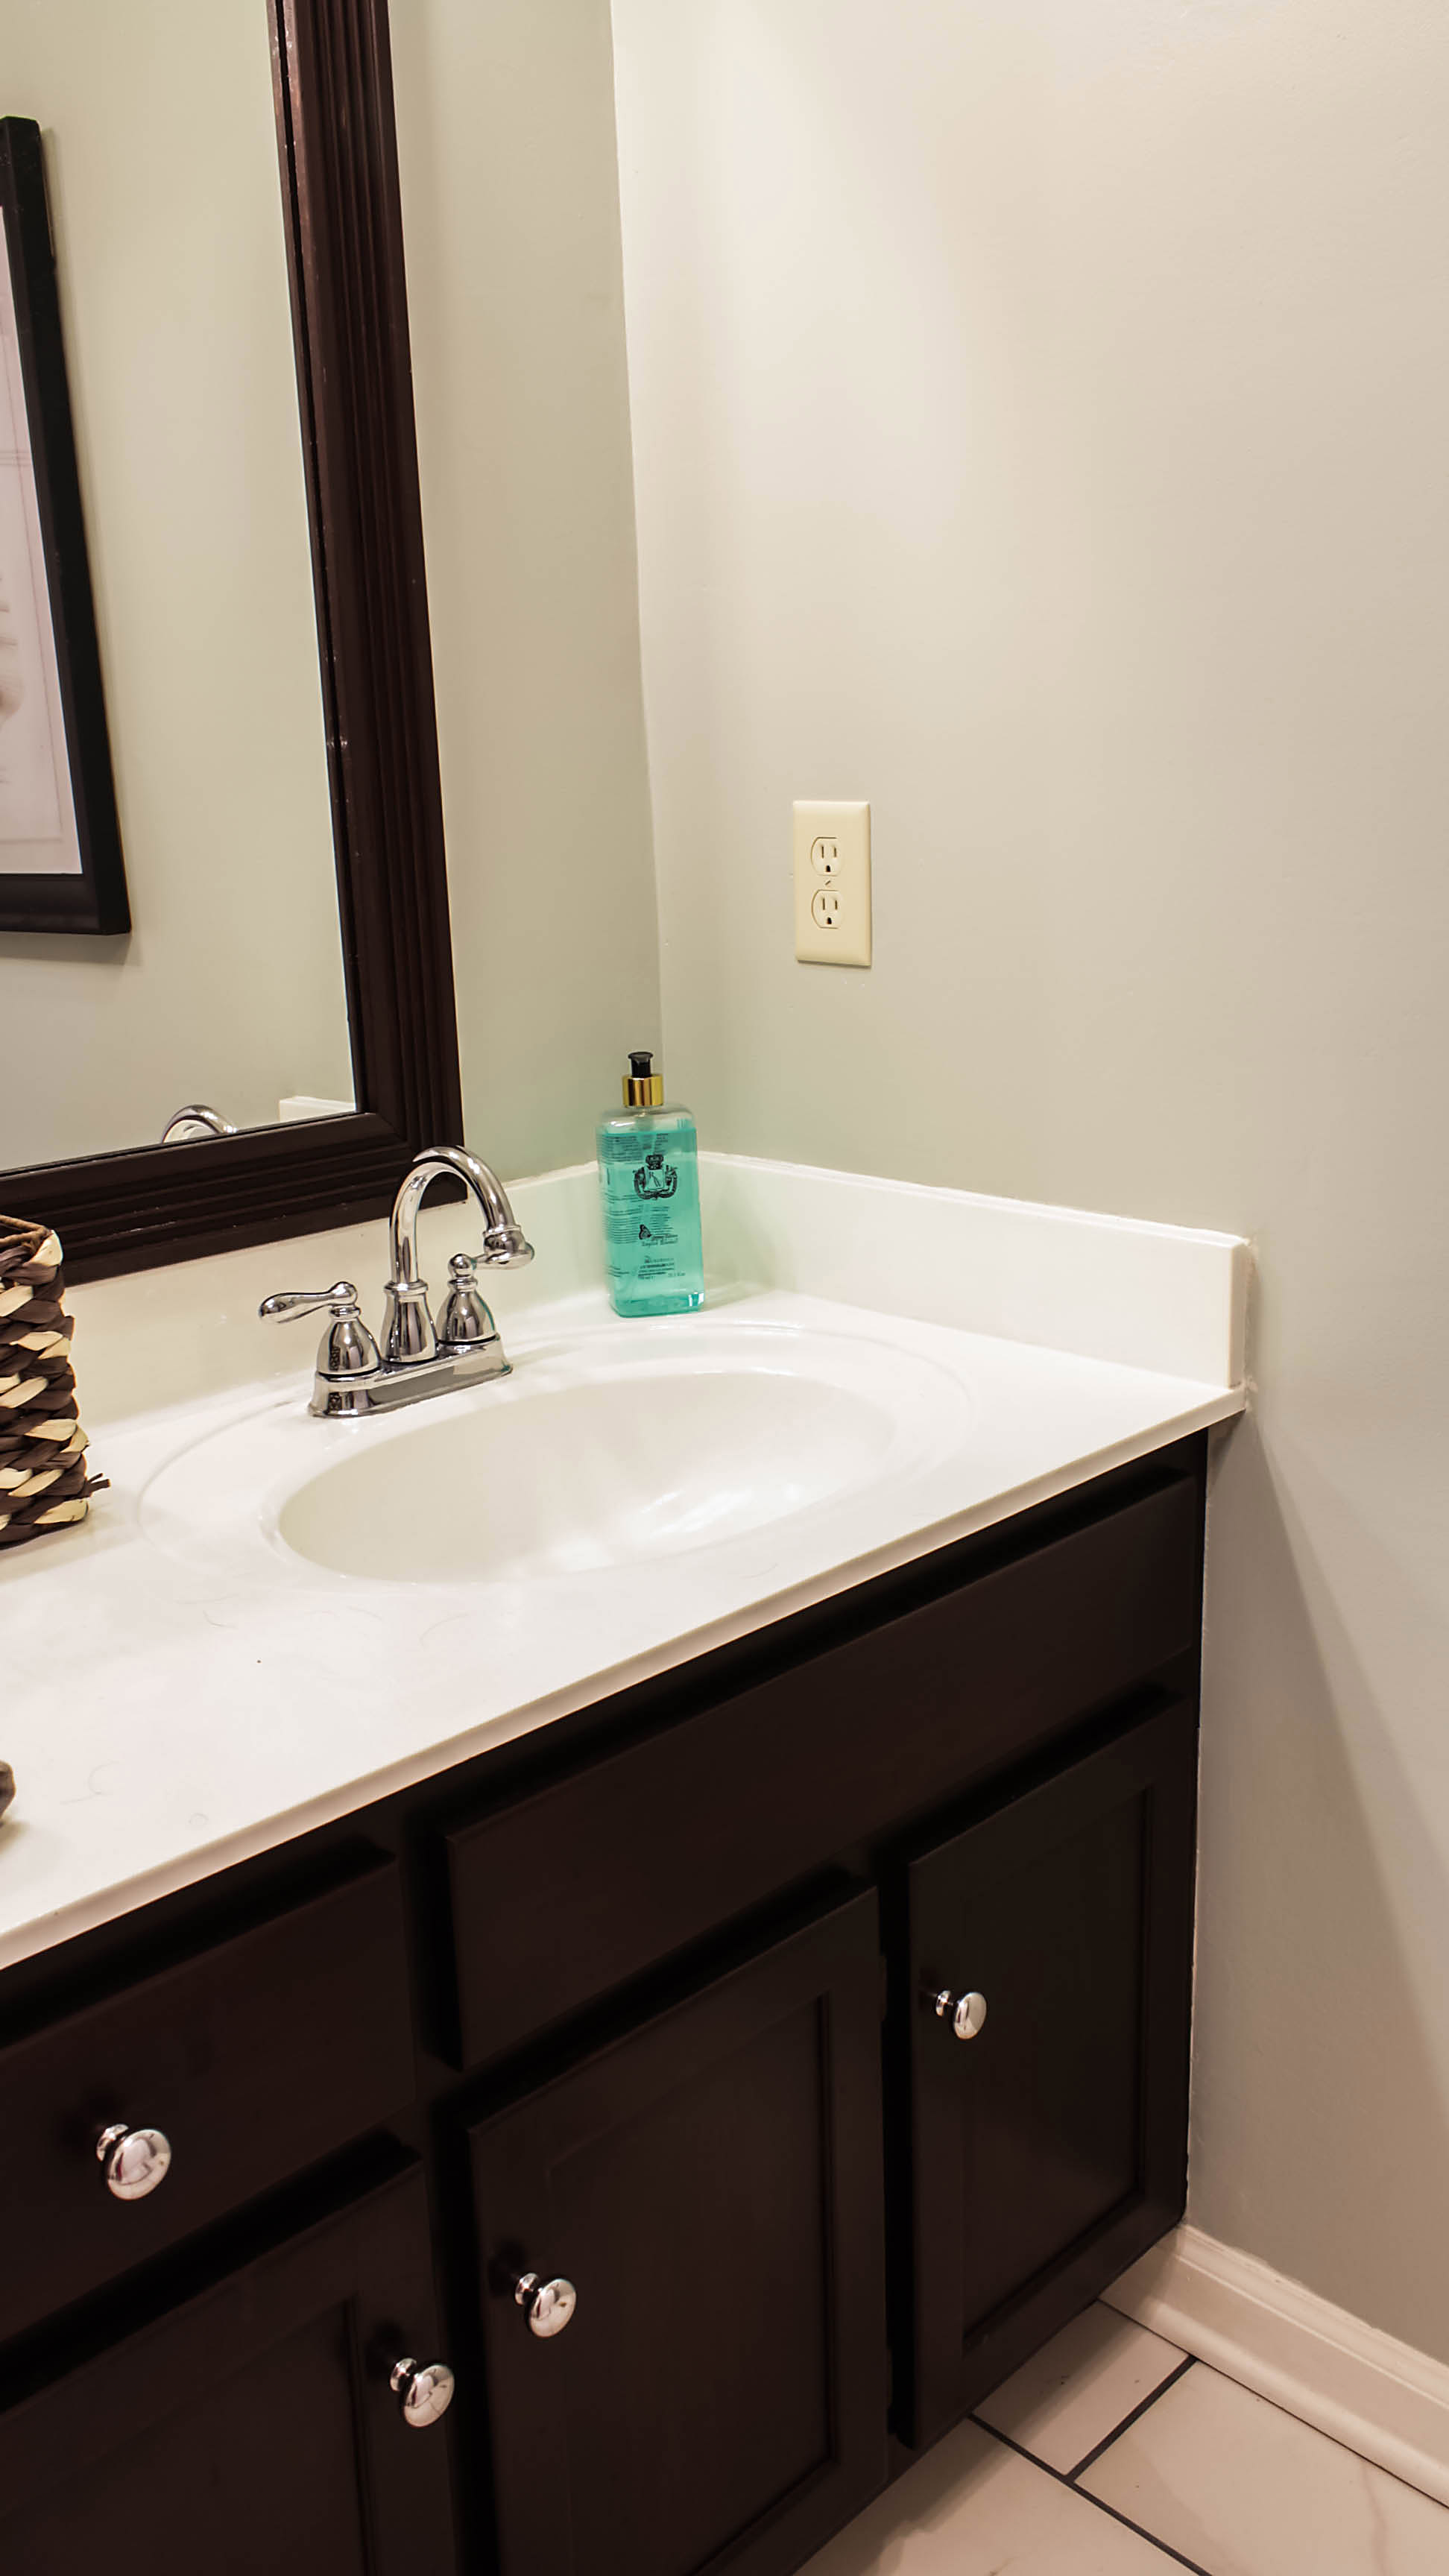 Transforming Bathroom Vanity With Gel Stain Java - Refinishing Bathroom Vanity Gel Stain